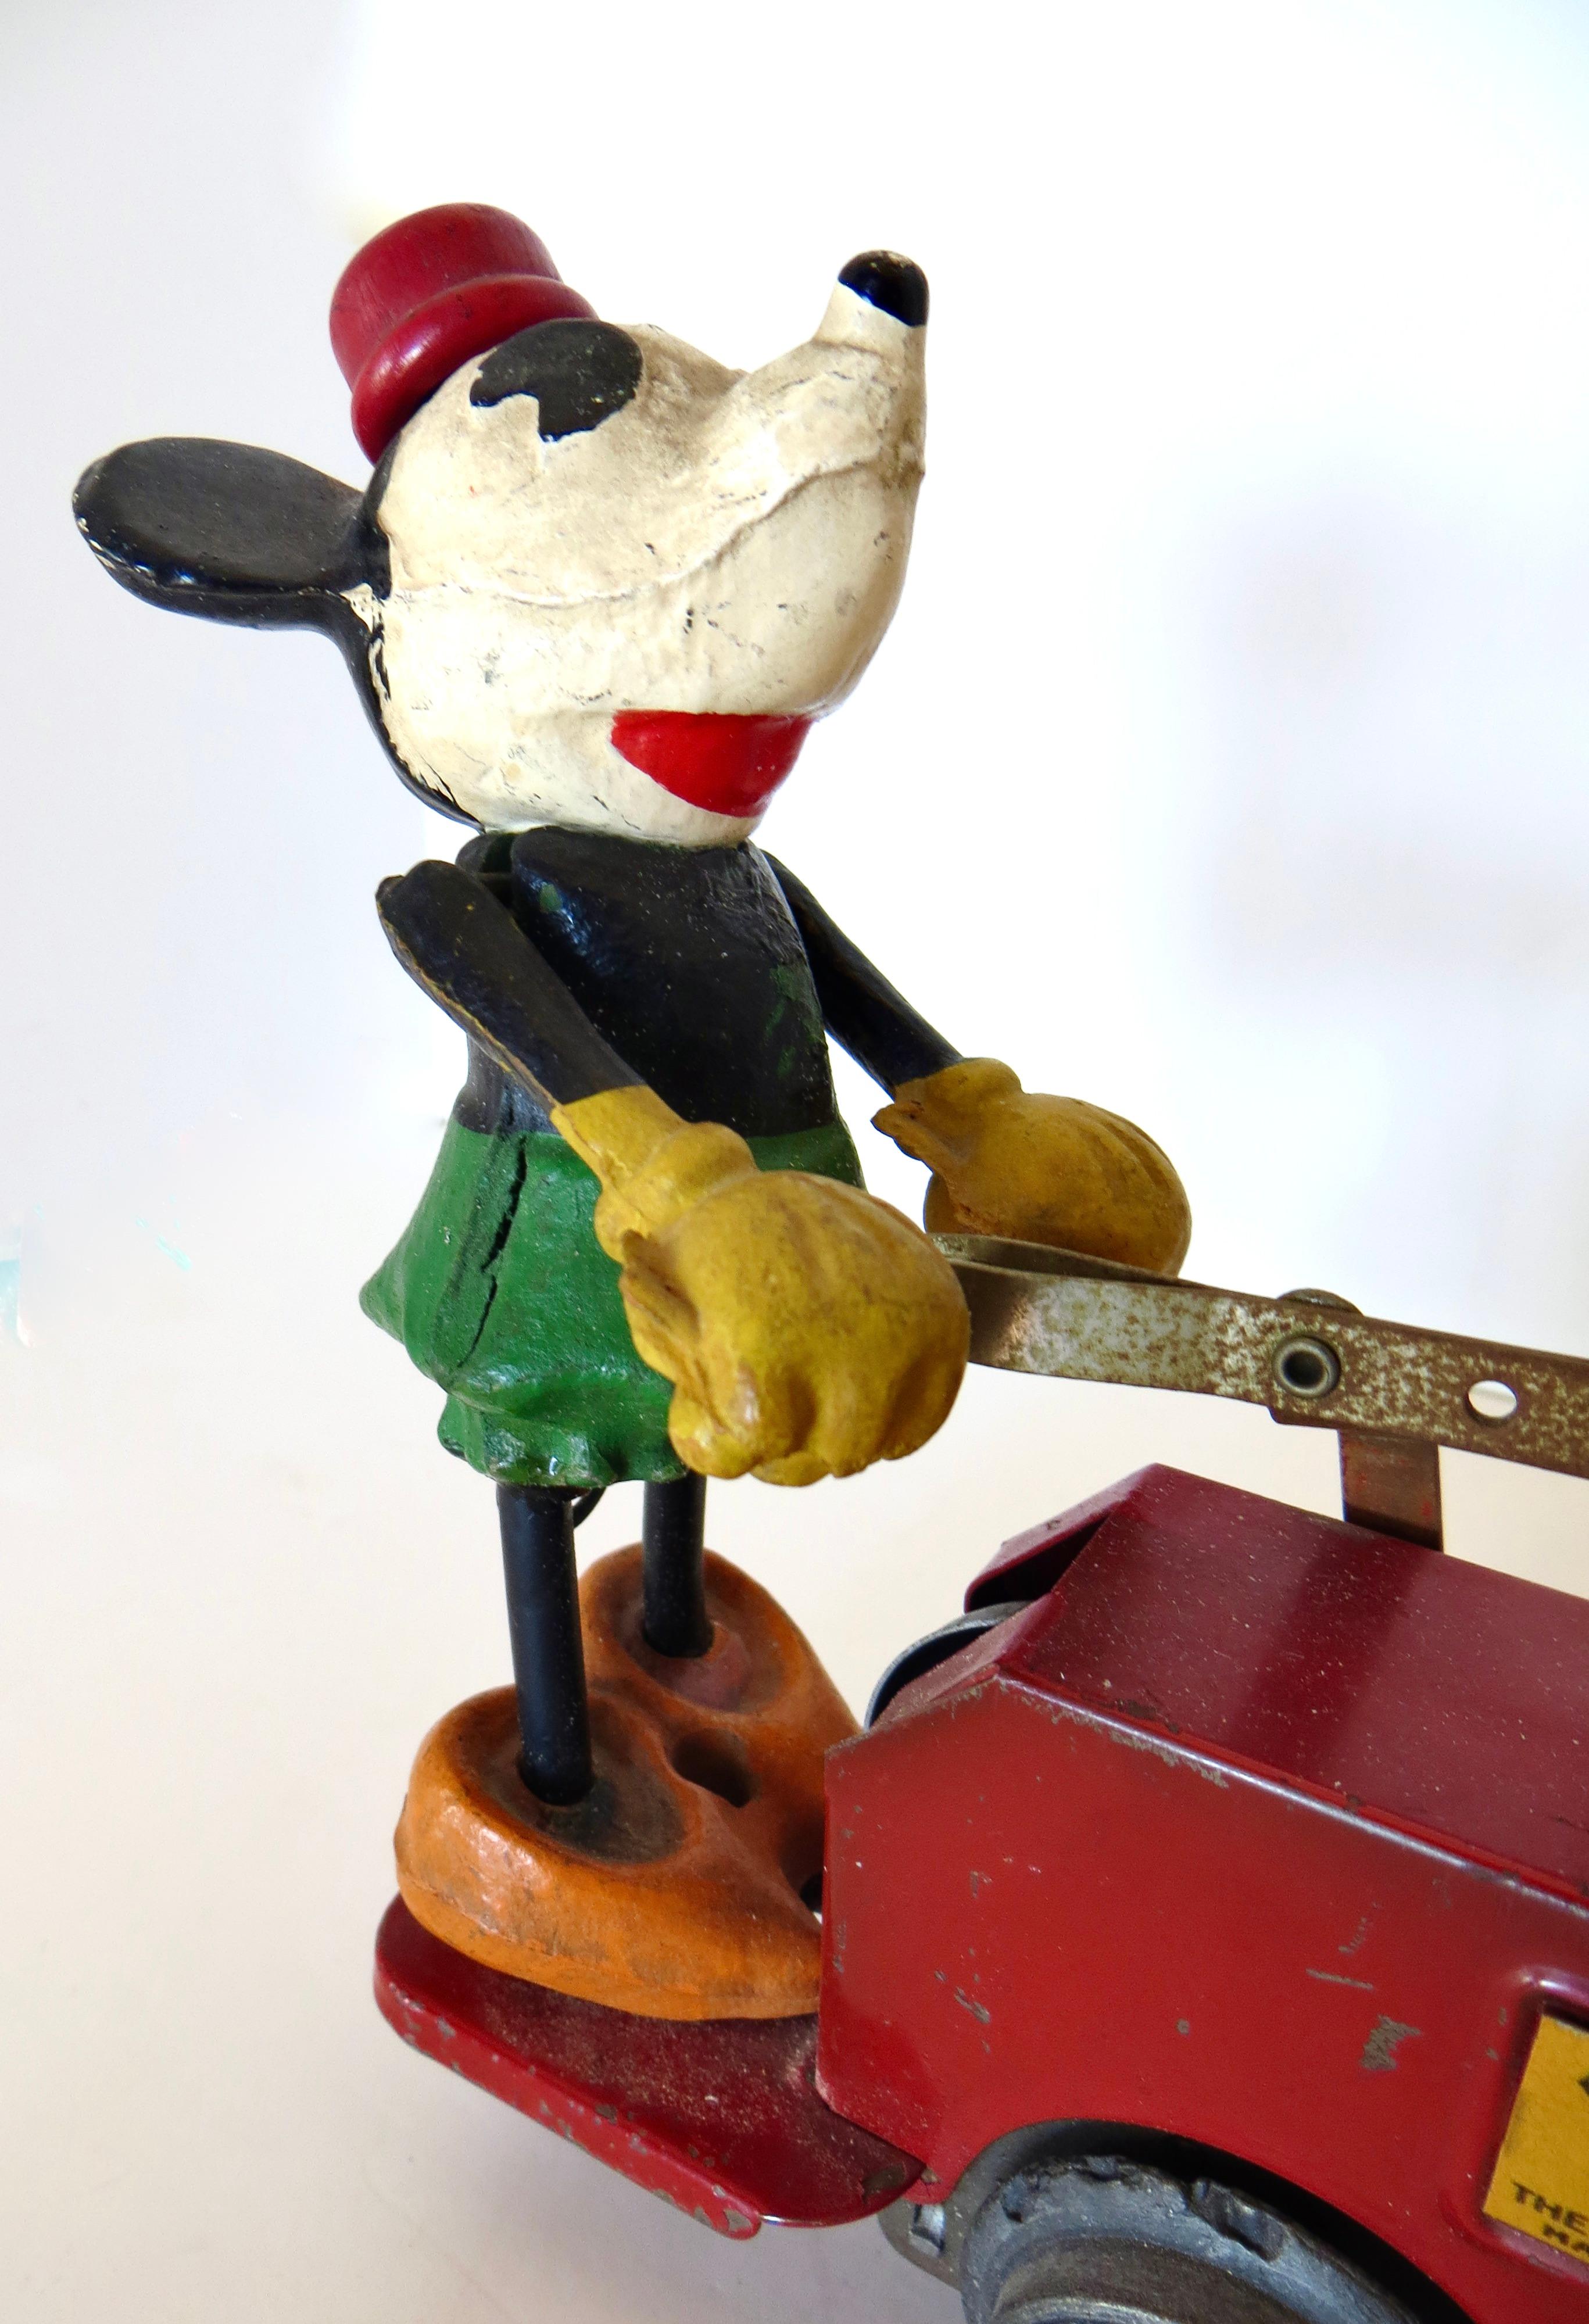 Coche de mano (vagón de tren) antiguo de Mickey/Minnie Mouse de la preguerra de 1934; fabricado por The Lionel Train Company en colaboración con Walt Disney Enterprises. El coche de juguete a cuerda presenta a Mickey Mouse y Minnie Mouse bombeando